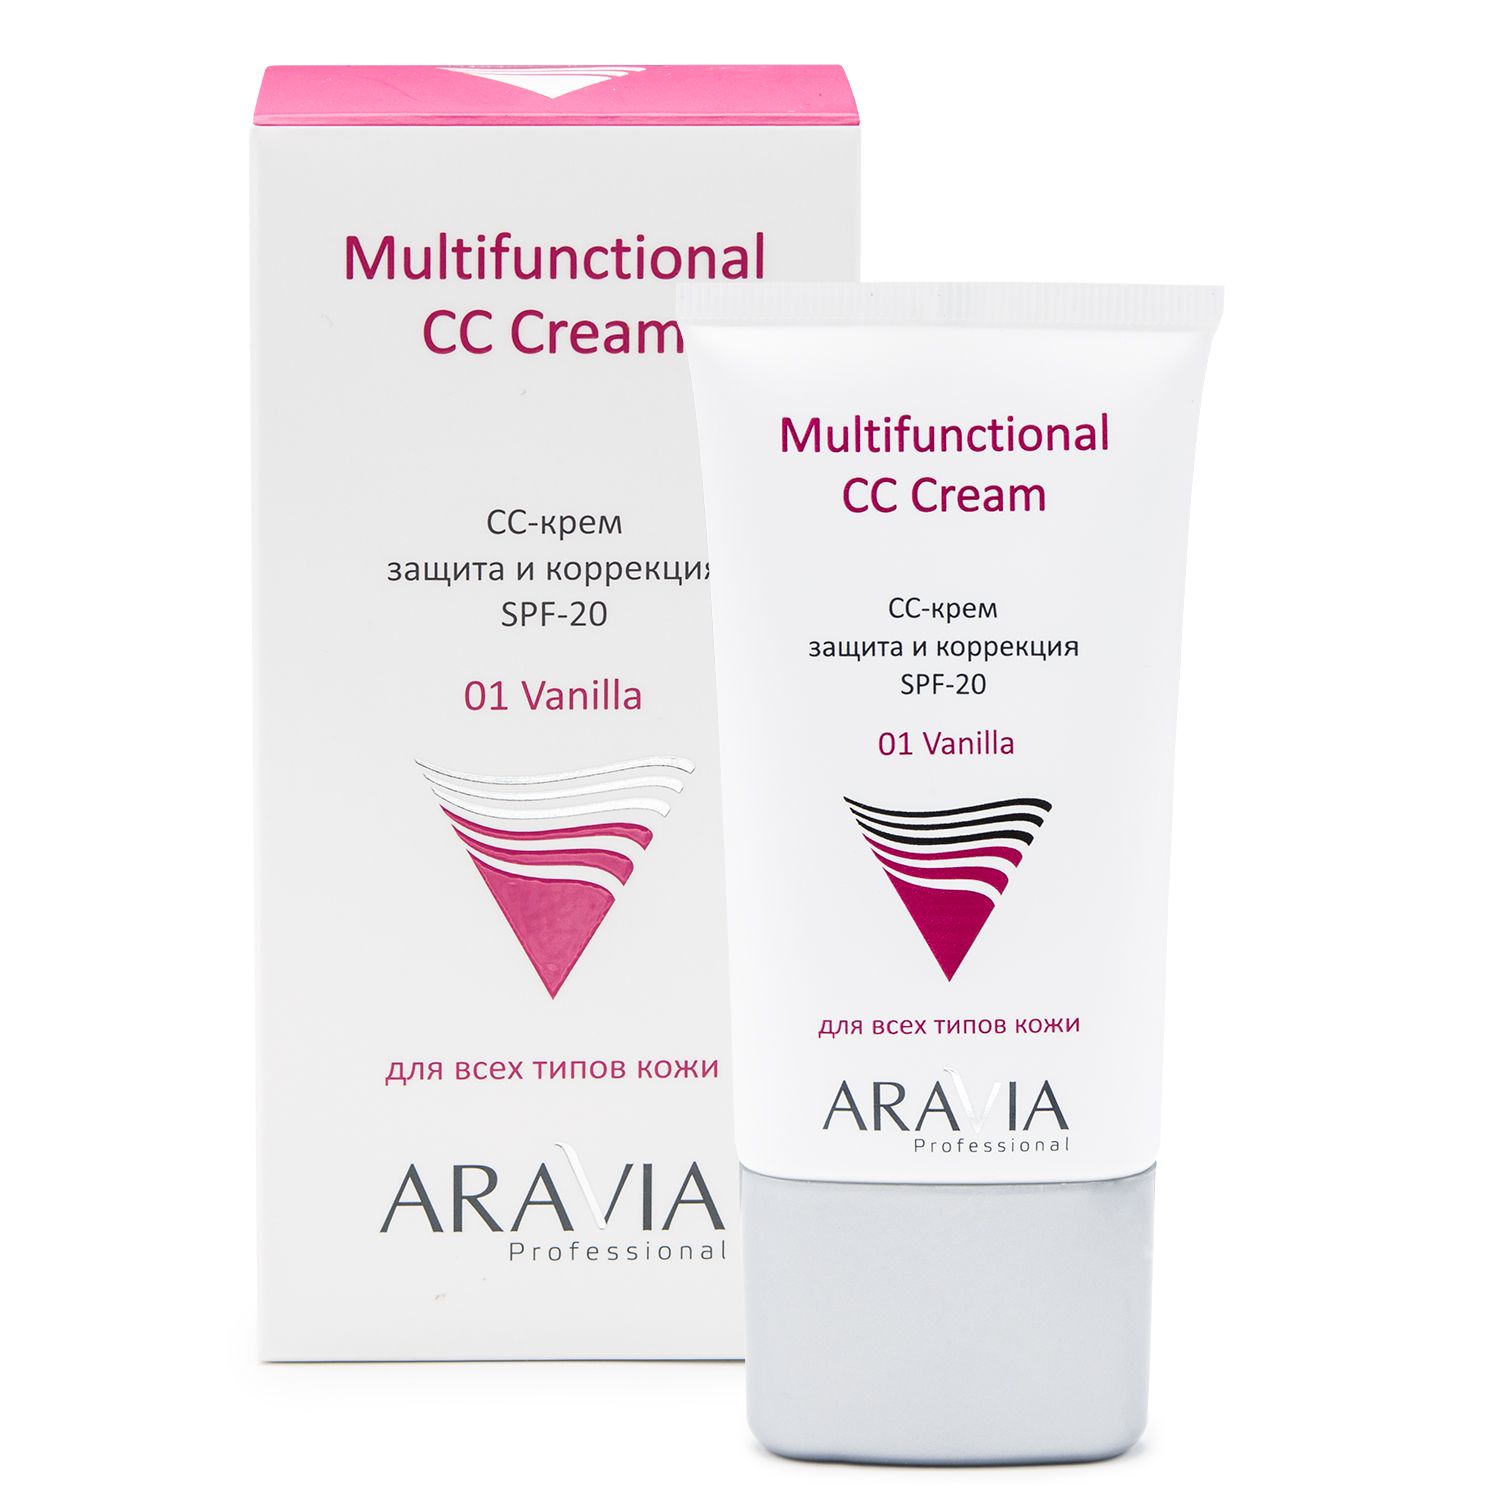 9206 СС-крем защитный SPF-20 Multifunctional CC Cream, Vanilla 01, 50 мл, ARAVIA Professional